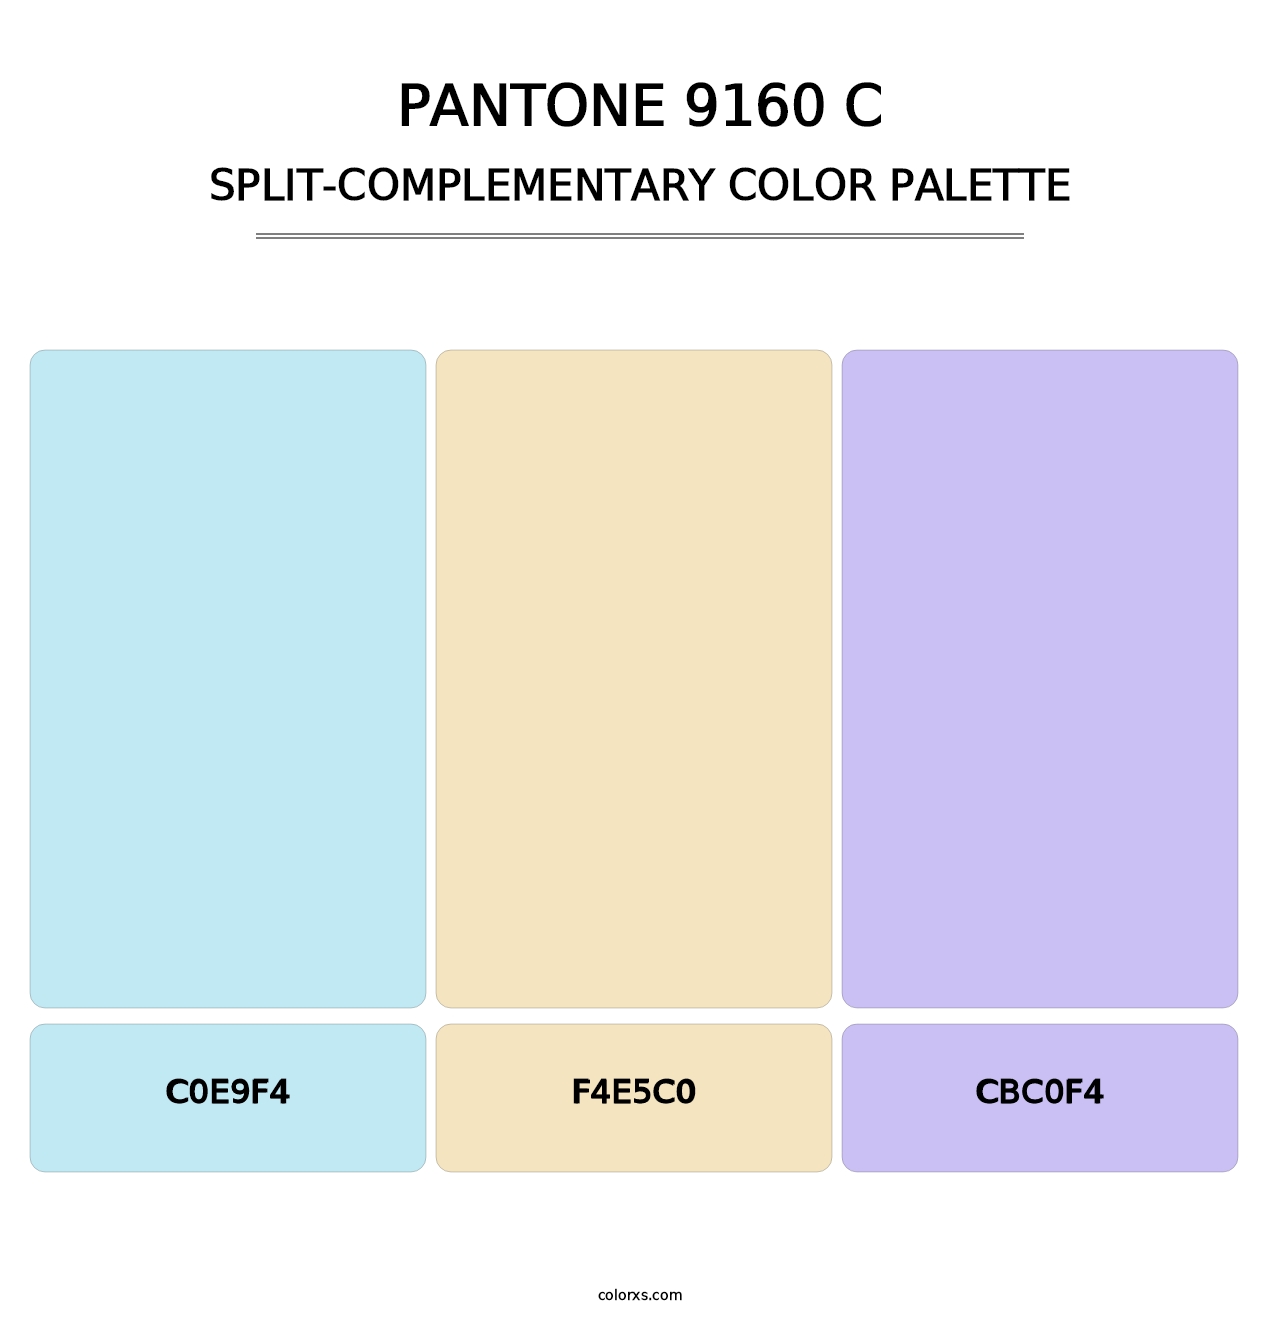 PANTONE 9160 C - Split-Complementary Color Palette